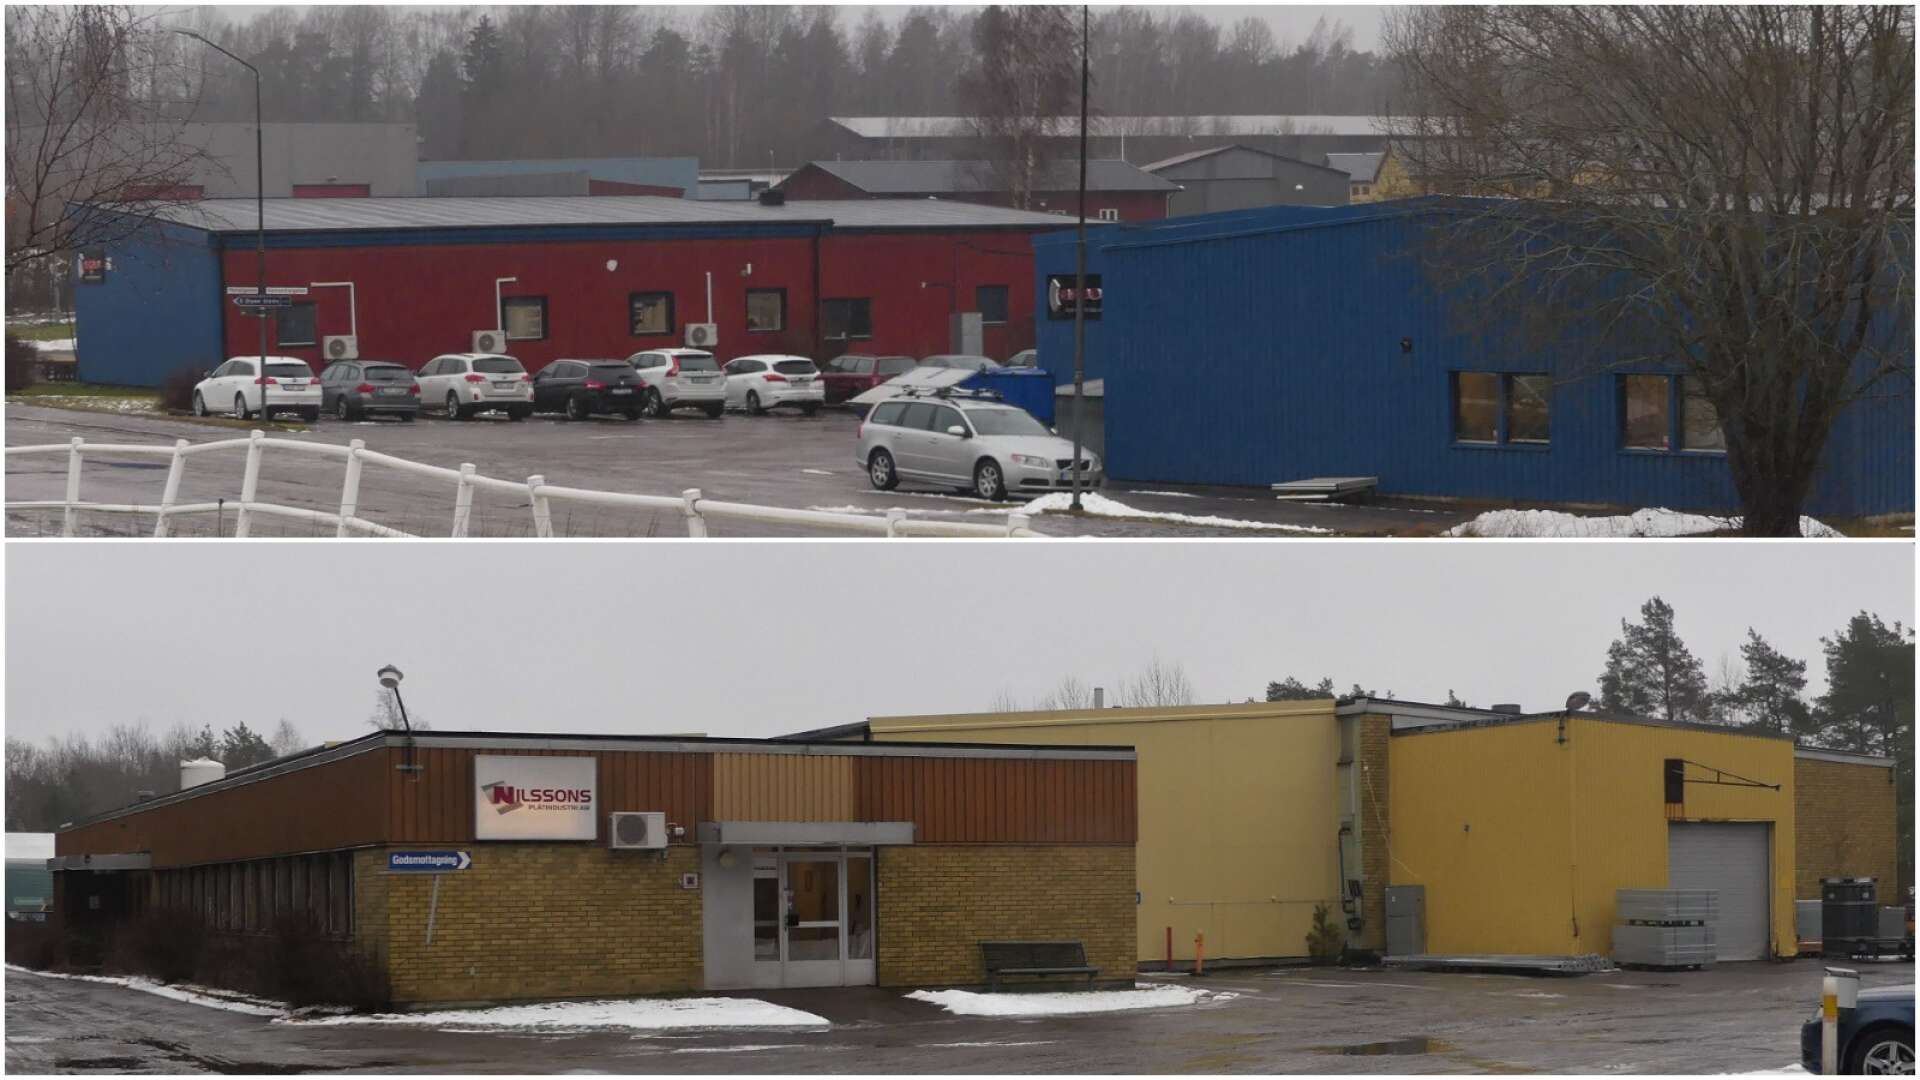 Två stora industrifastigheter är till salu i Säffle, Aspervalls och Nilssons Plåt. Priserna ligger på mellan 6 och 7,6 miljoner kronor.